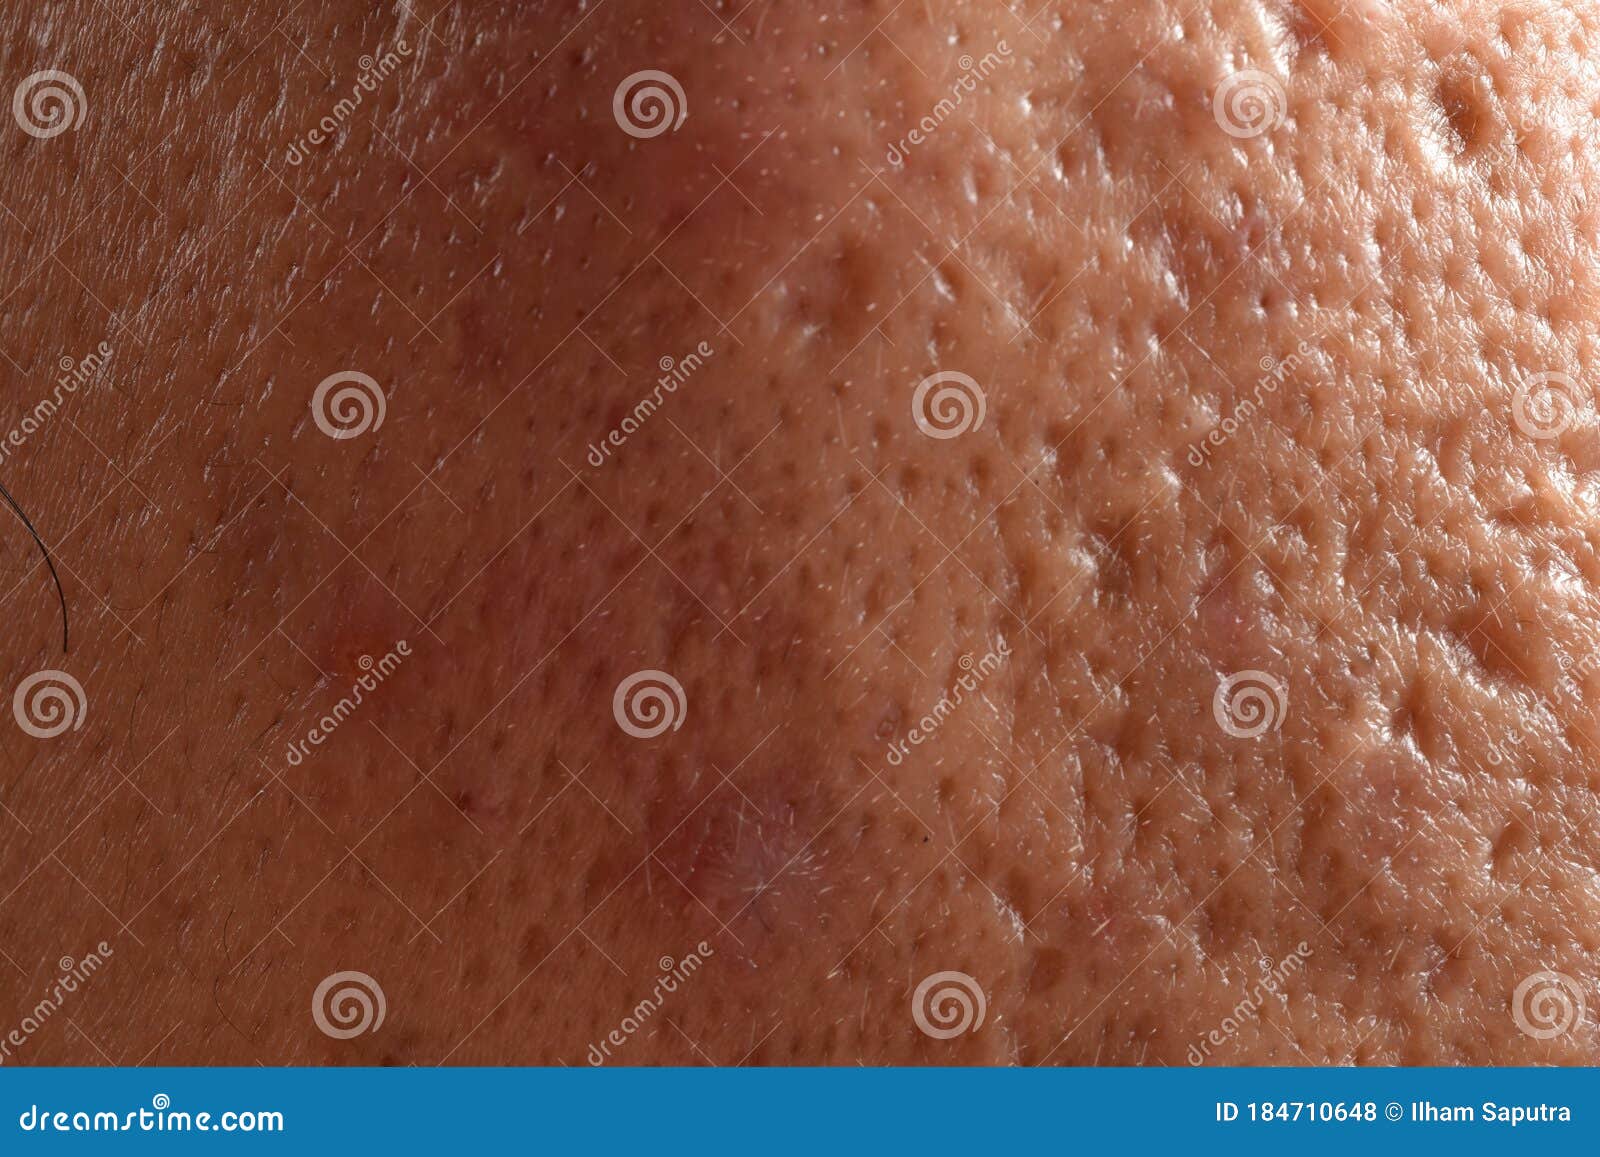 Close Up Photo Of Nodular Cystic Acne Skin Photo Stock Image Du